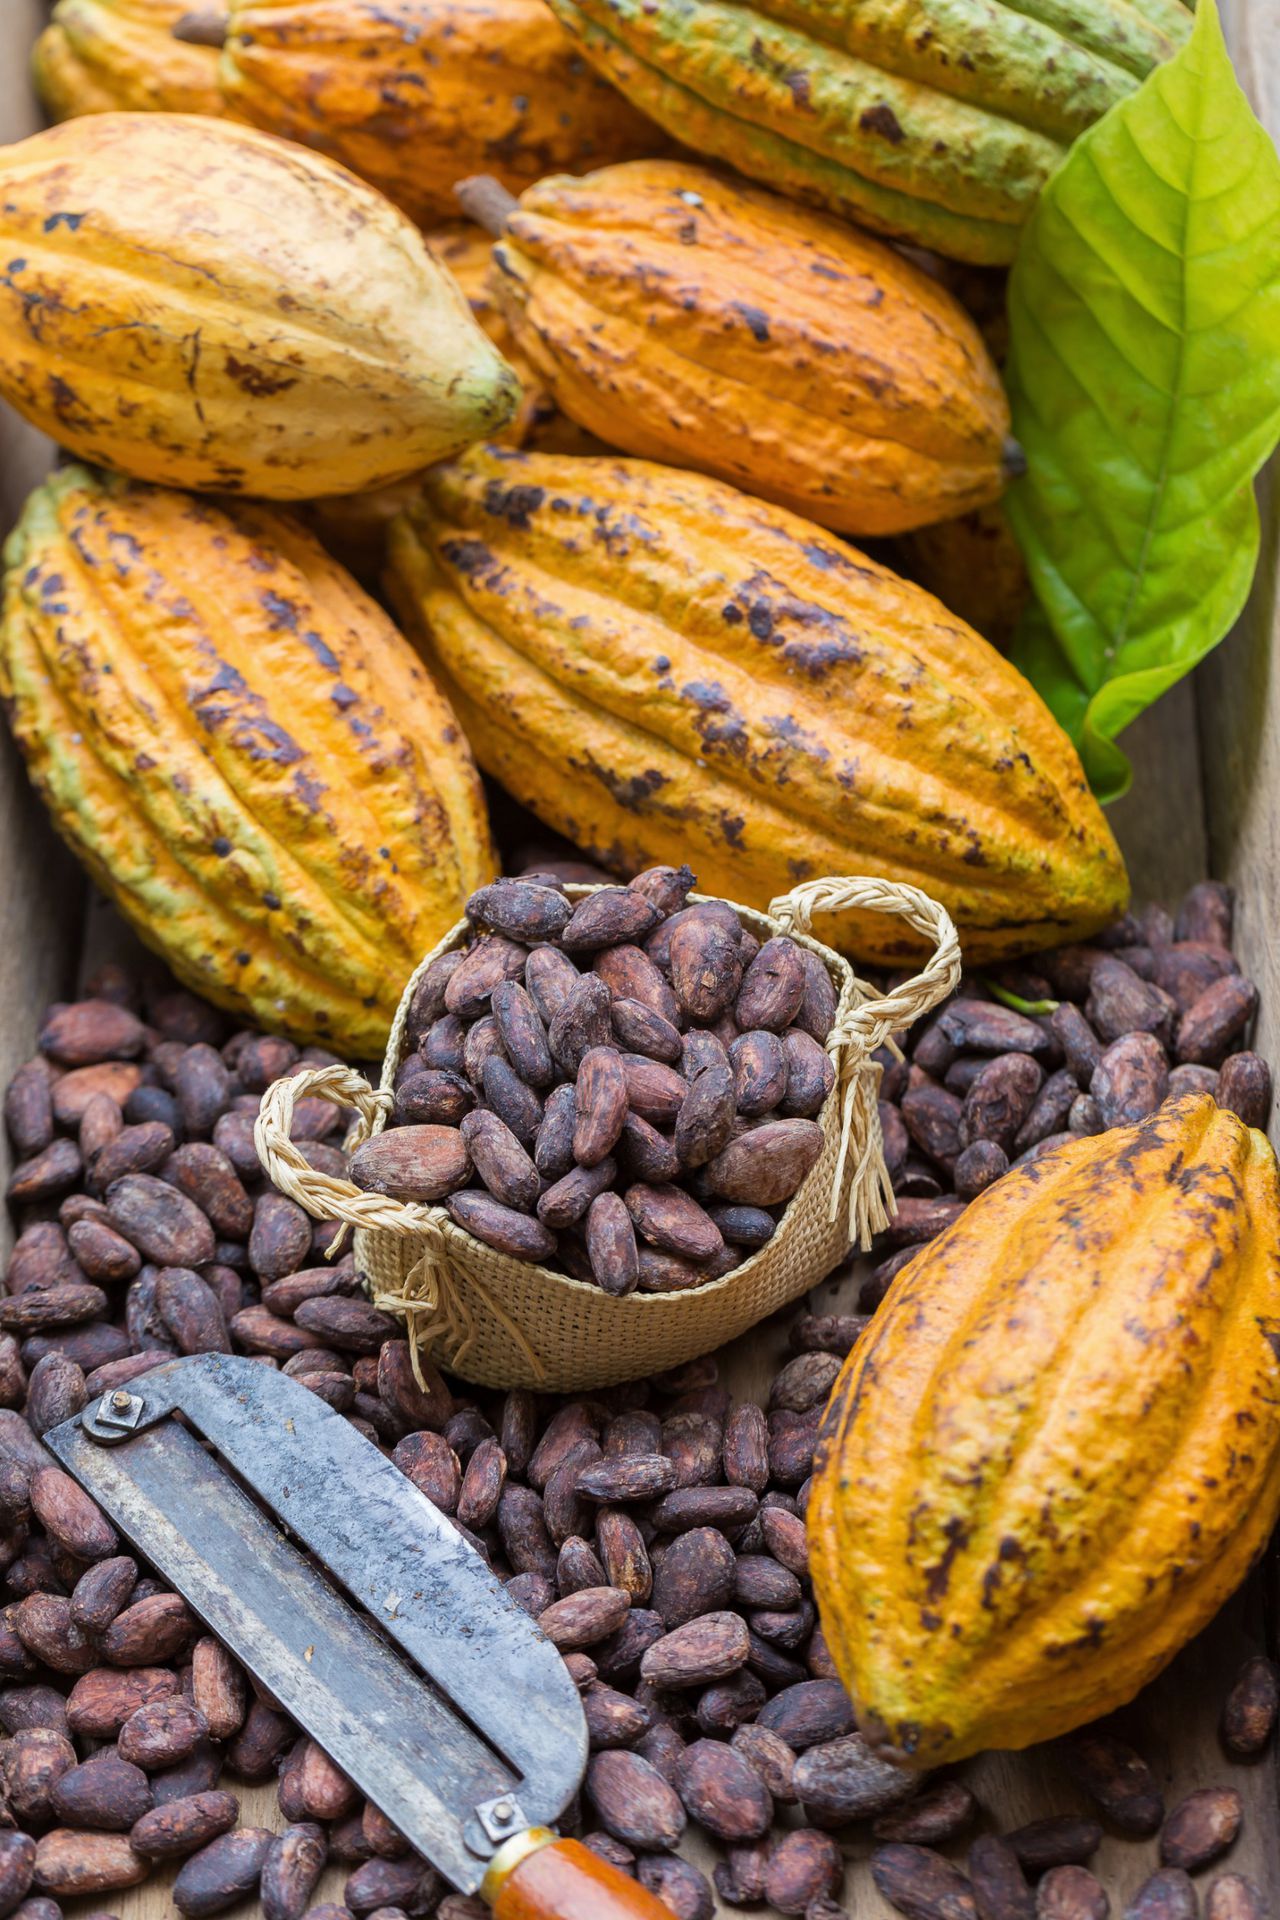 El cacao es un excelente aliado para prevenir enfermedades cardiovasculares, cerebrovasculares, cáncer hepático, gástrico y de colon.